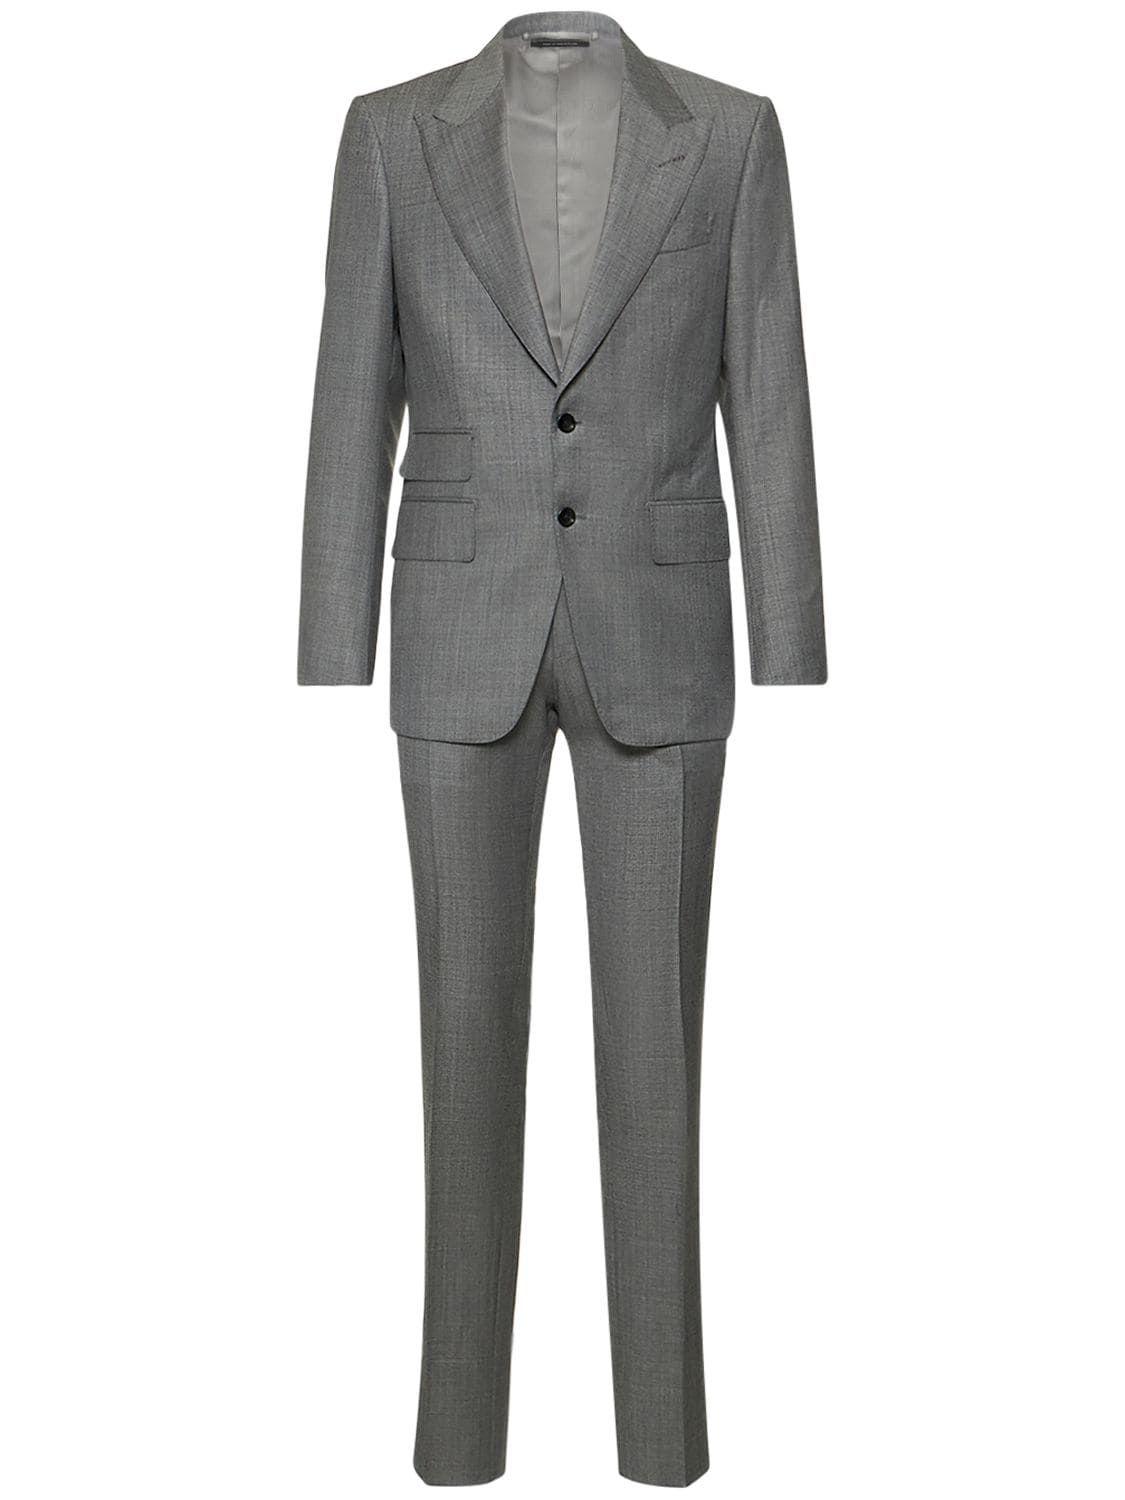 Tom Ford Shelton Super 110's Sharkskin Suit in Gray for Men | Lyst